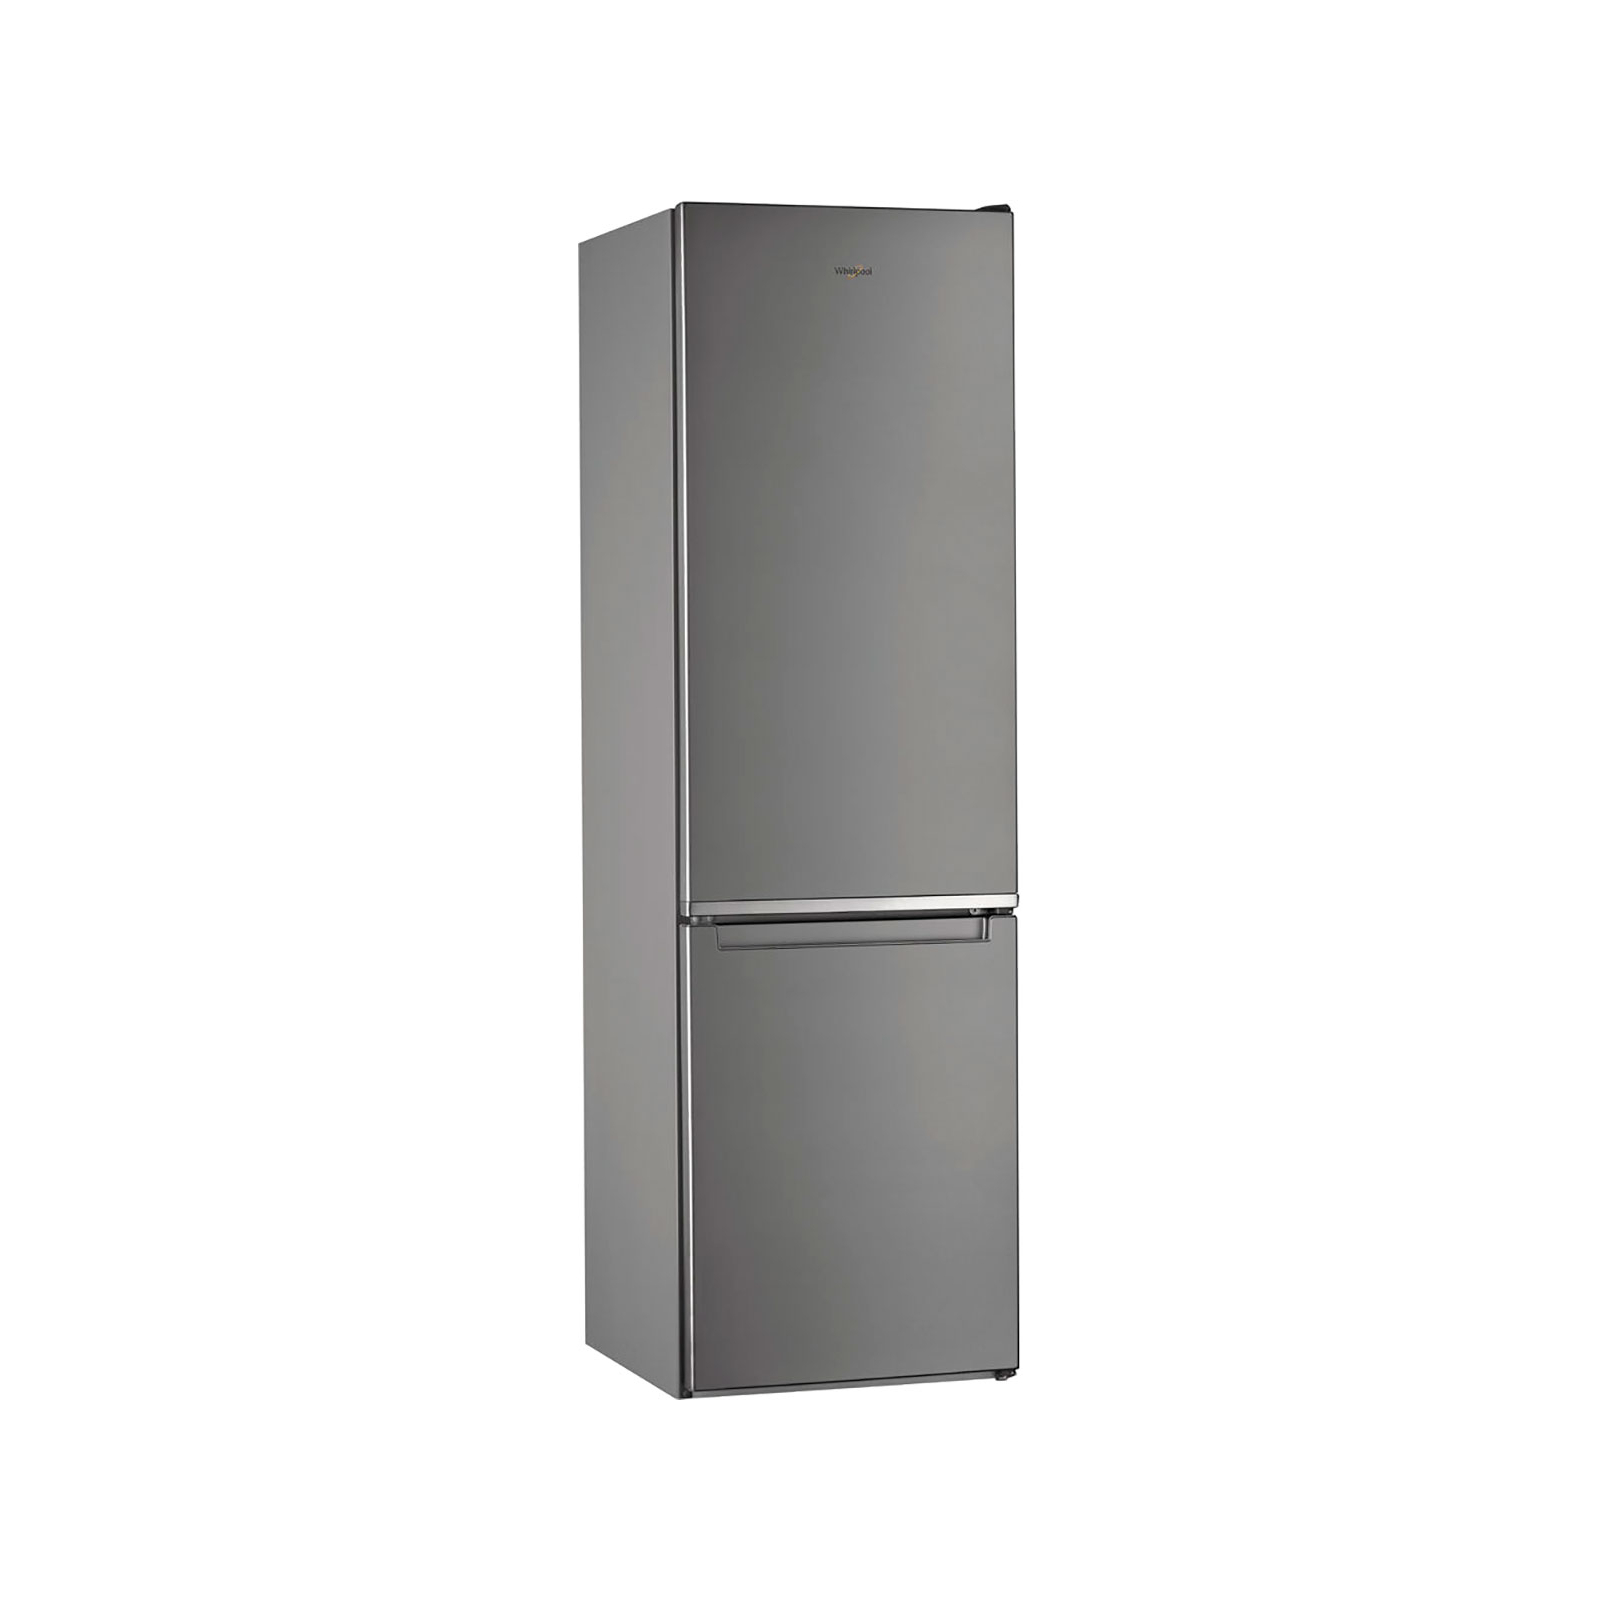 Холодильник Whirlpool W9921COX